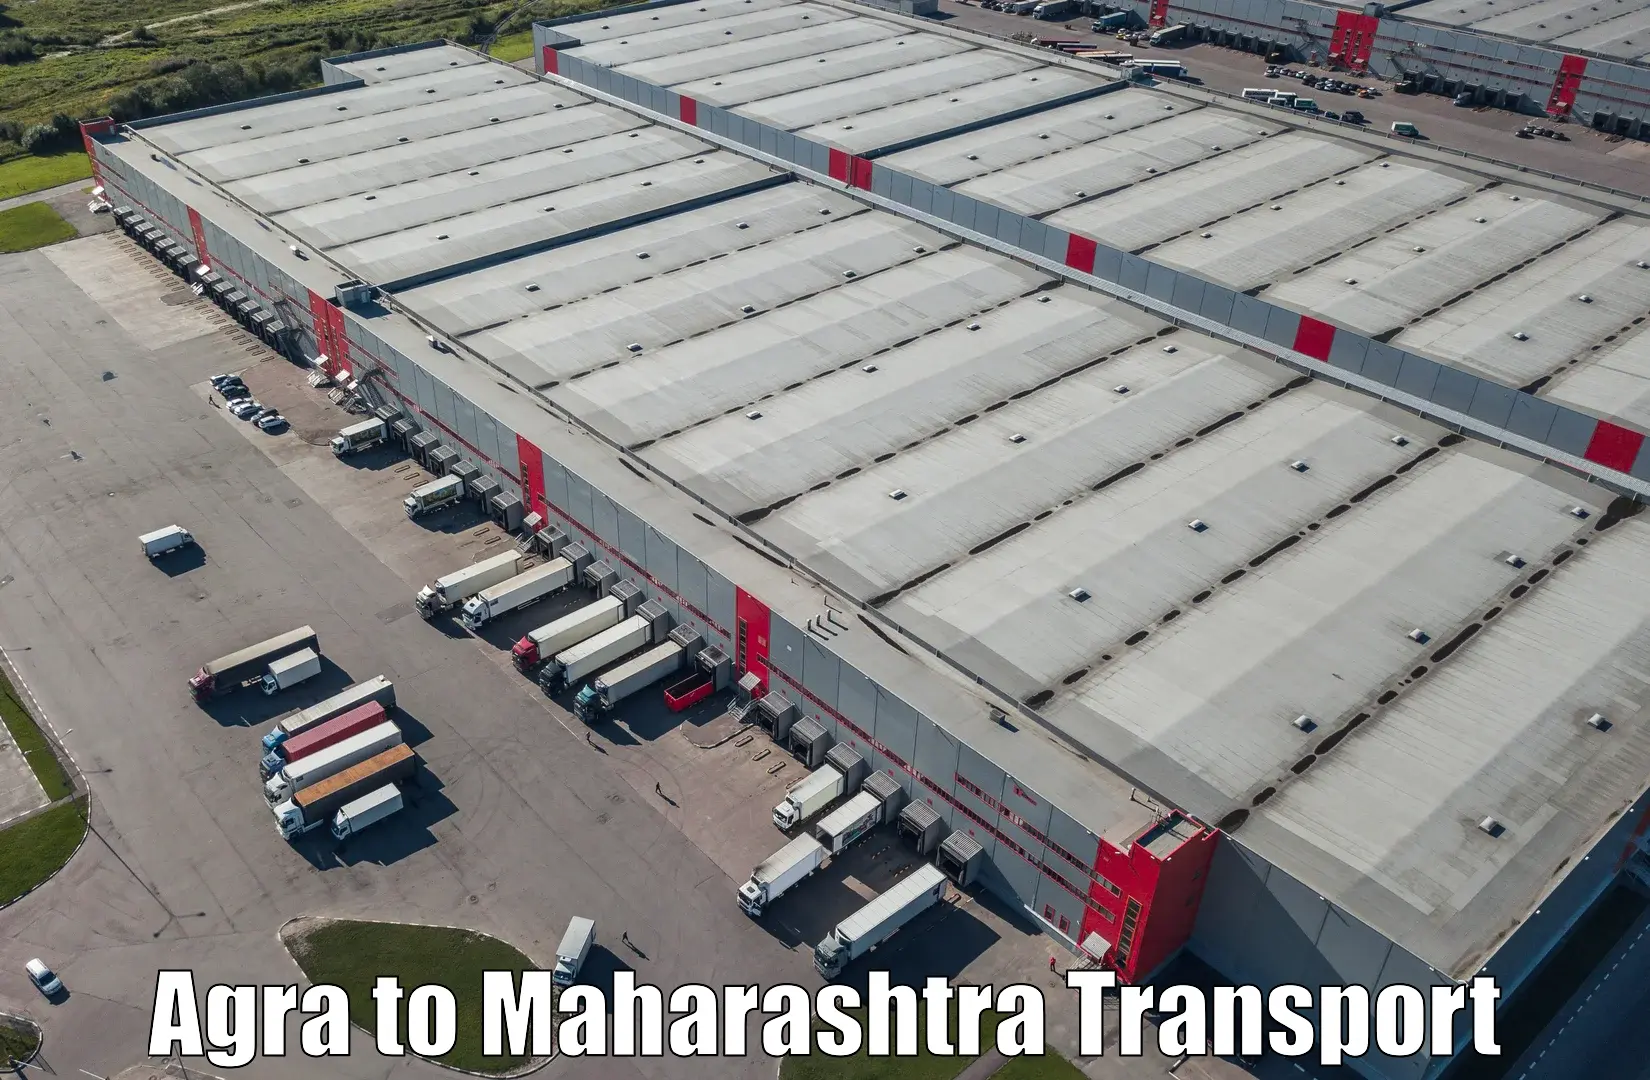 Online transport service Agra to Walchandnagar